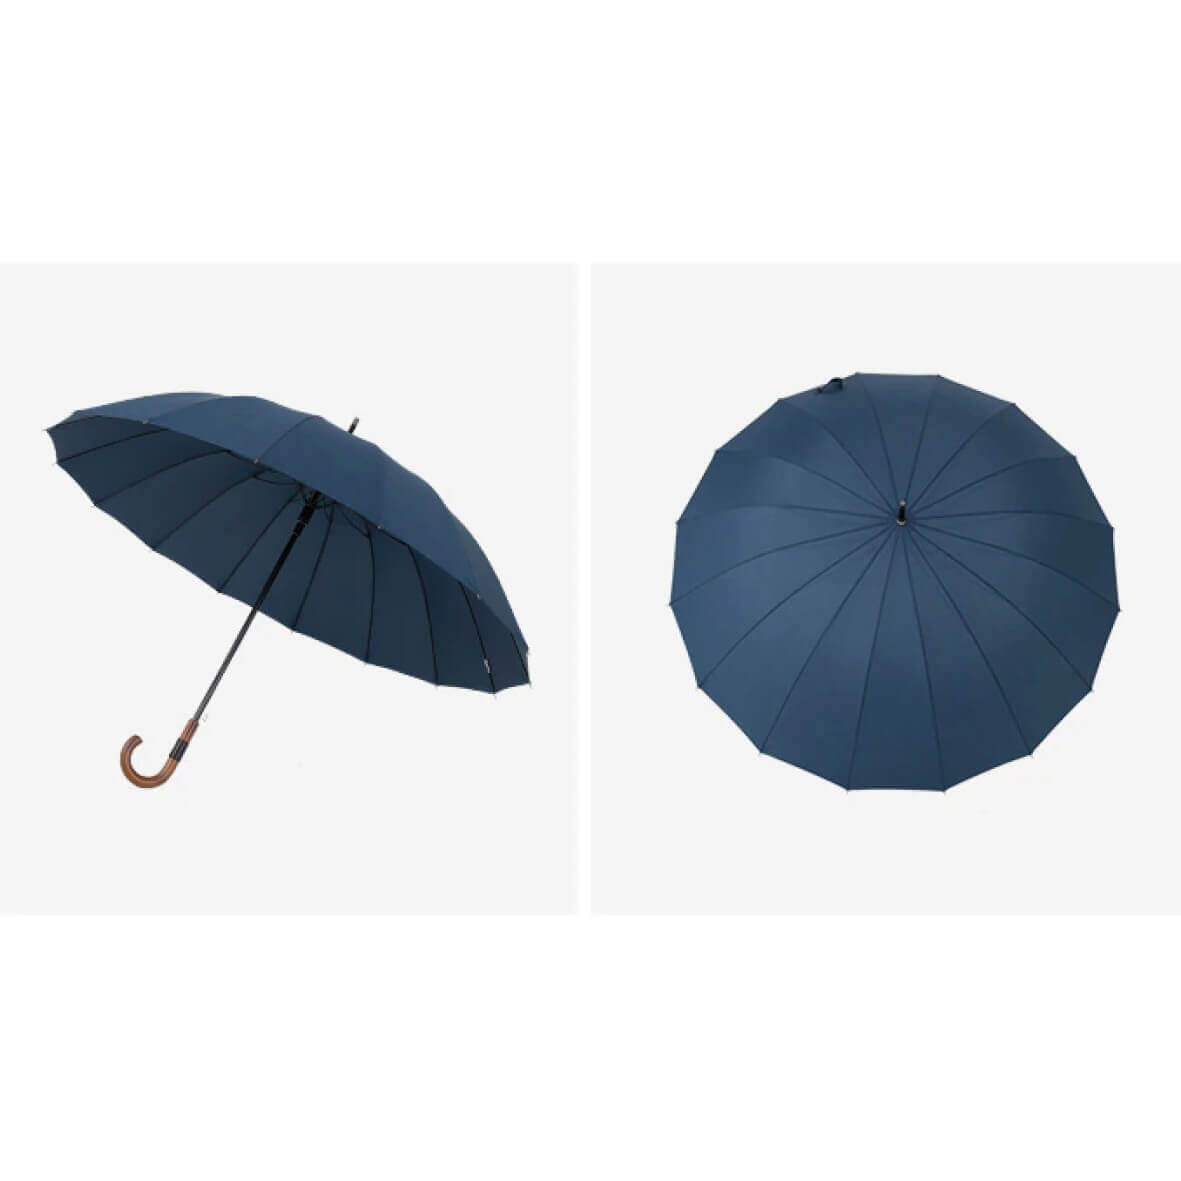 Premium wind-resistant umbrella in navy blue